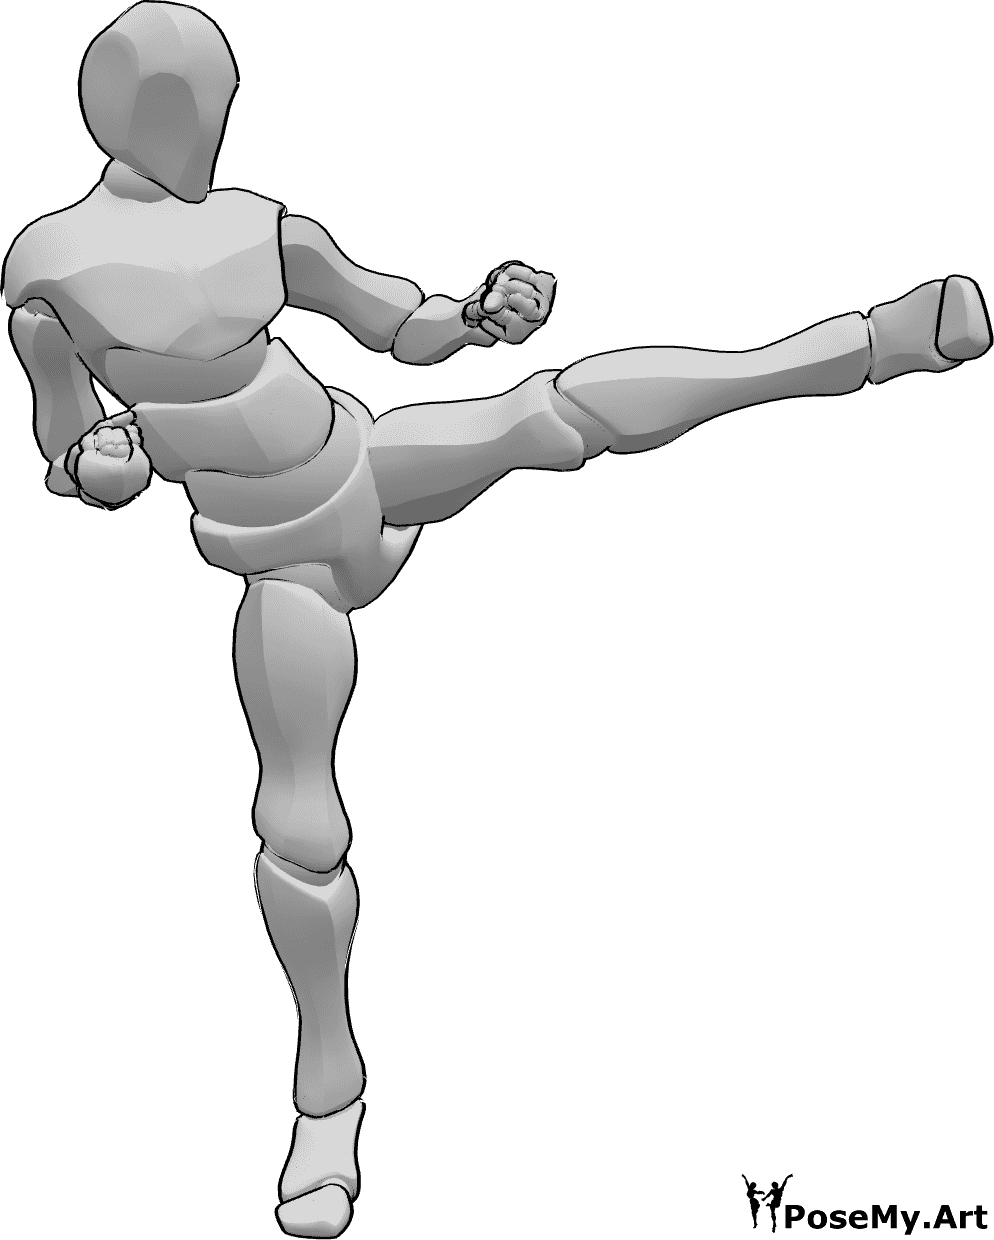 Posen-Referenz- Linker Fuß Kick Pose - Männliche Tritte mit dem linken Fuß Karate-Pose